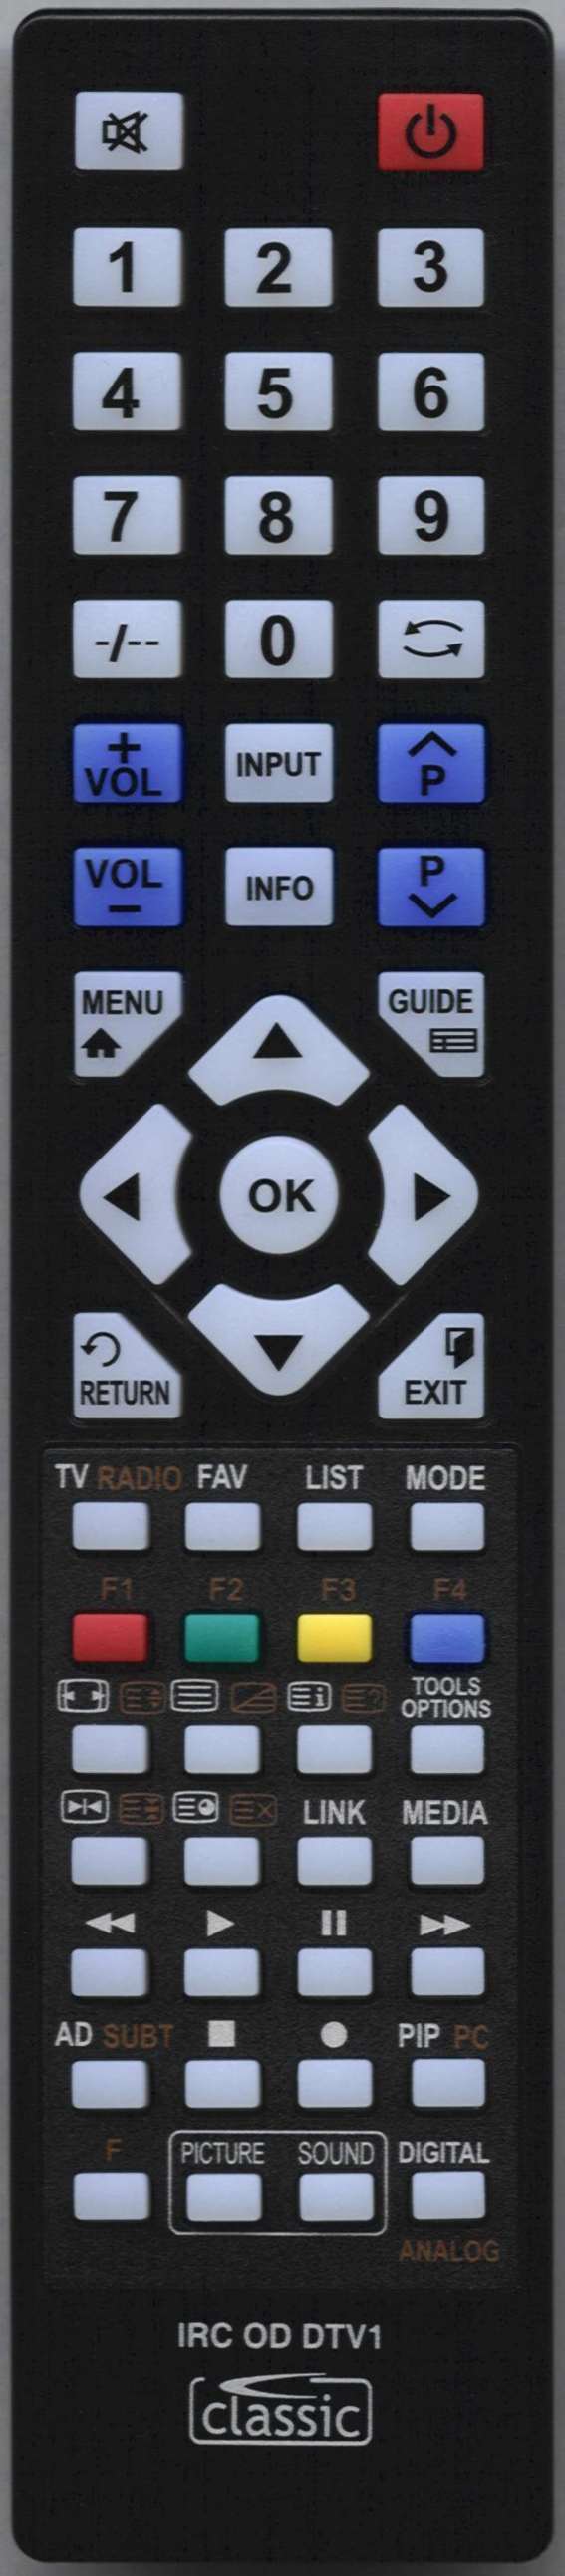 LUXOR 10048440 Remote Control Alternative